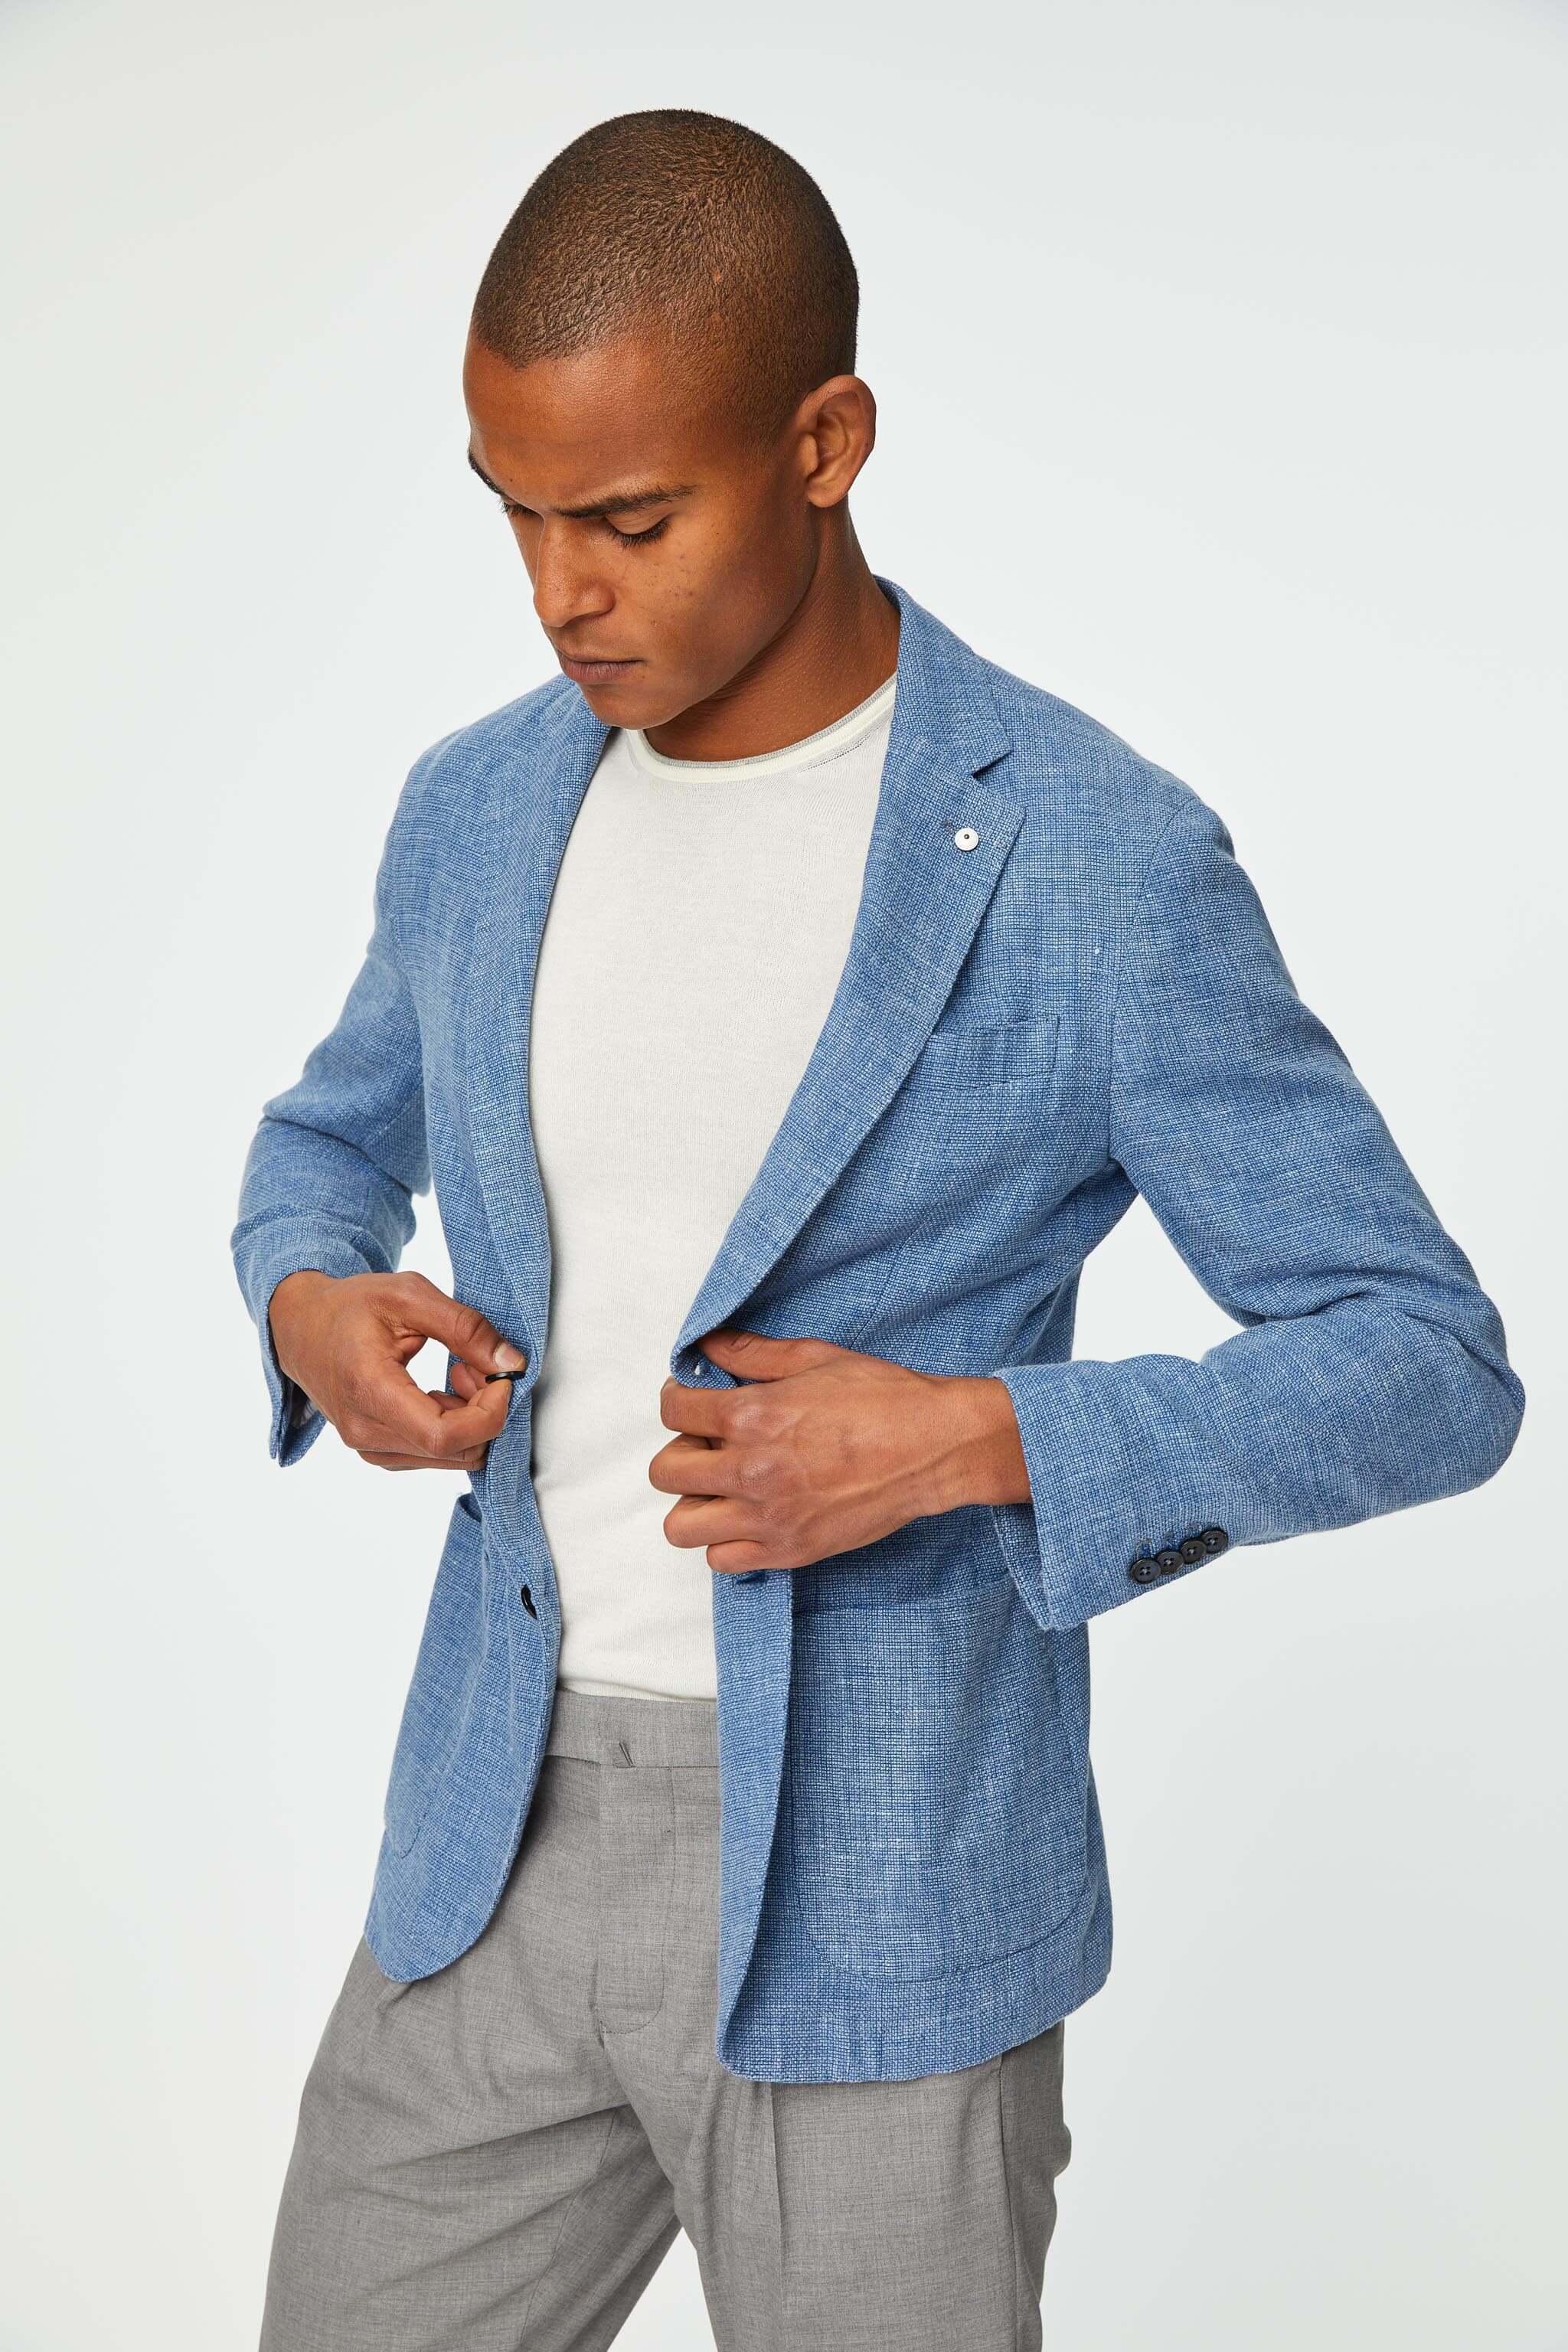 Garment-dyed JACK jacket in light blue